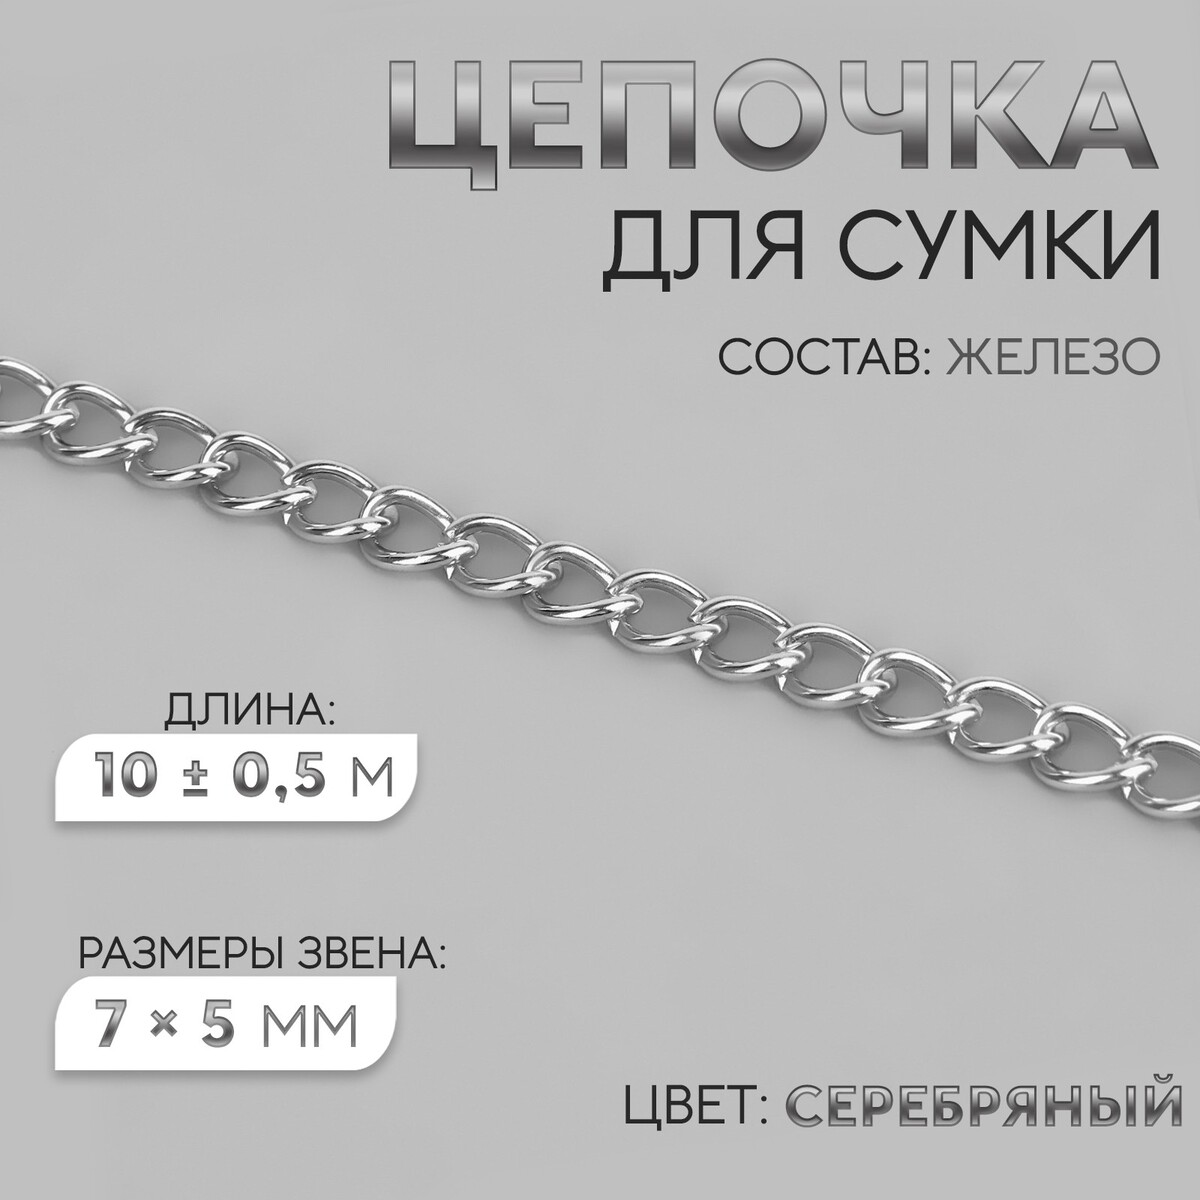 Цепочка для сумки, железная, 7 × 5 мм, 10 ± 0,5 м, цвет серебряный цепочка для сумки железная 7 × 5 мм 10 ± 0 5 м серебряный